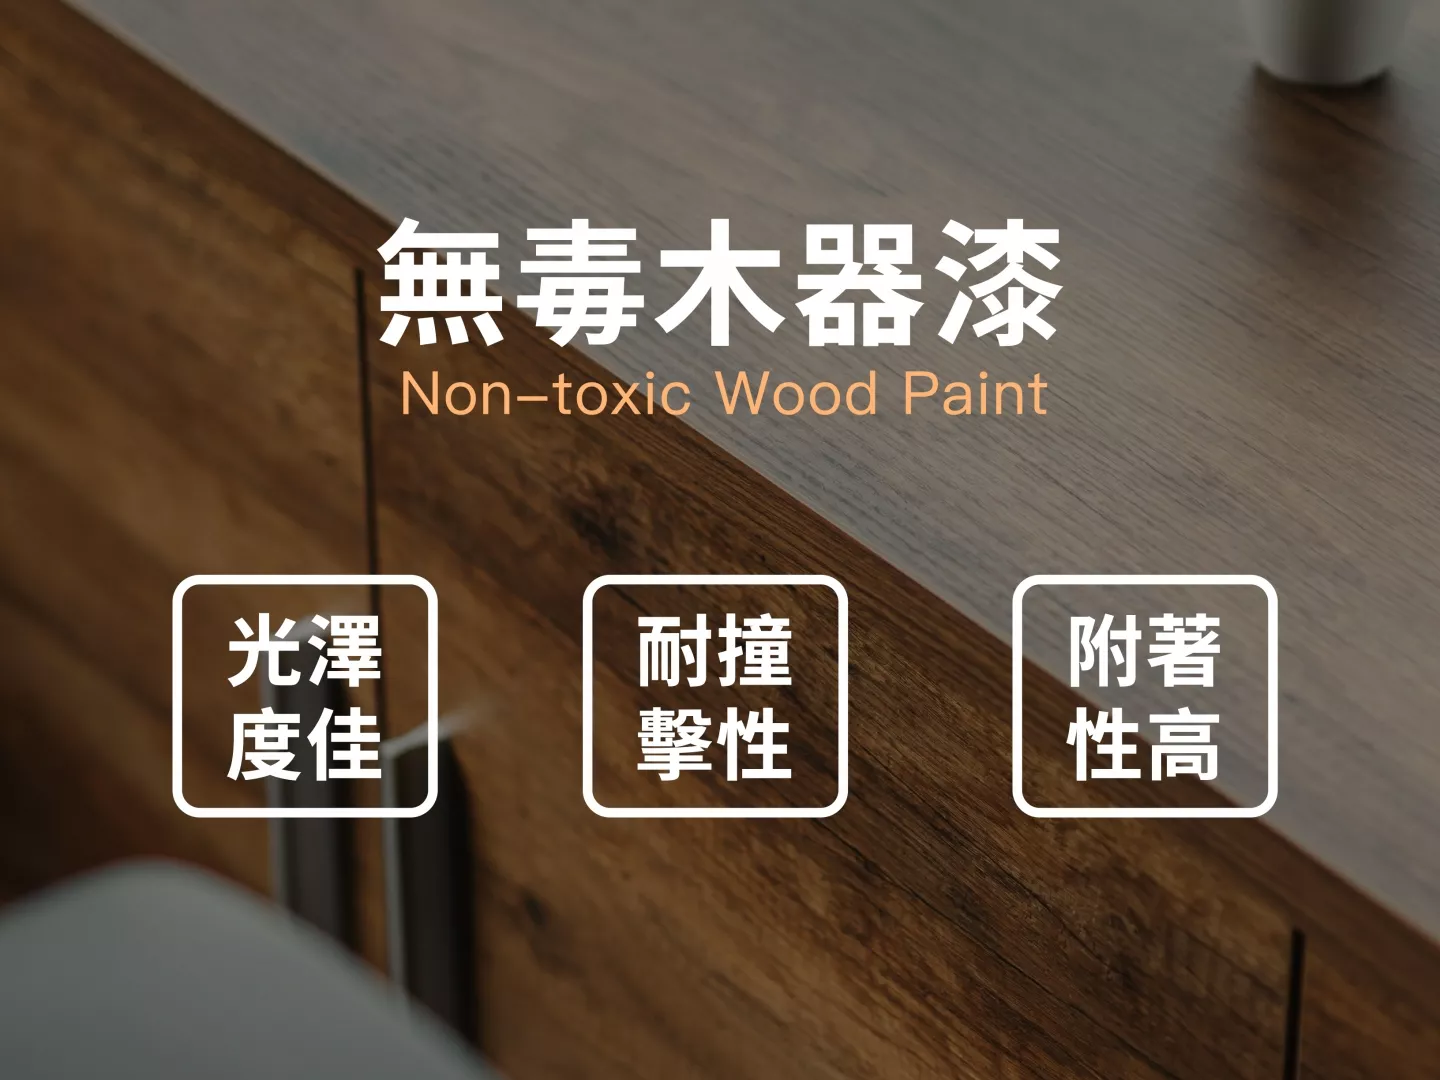 採用無毒木器漆,提高實木光澤度,耐撞擊性且漆料附著性高